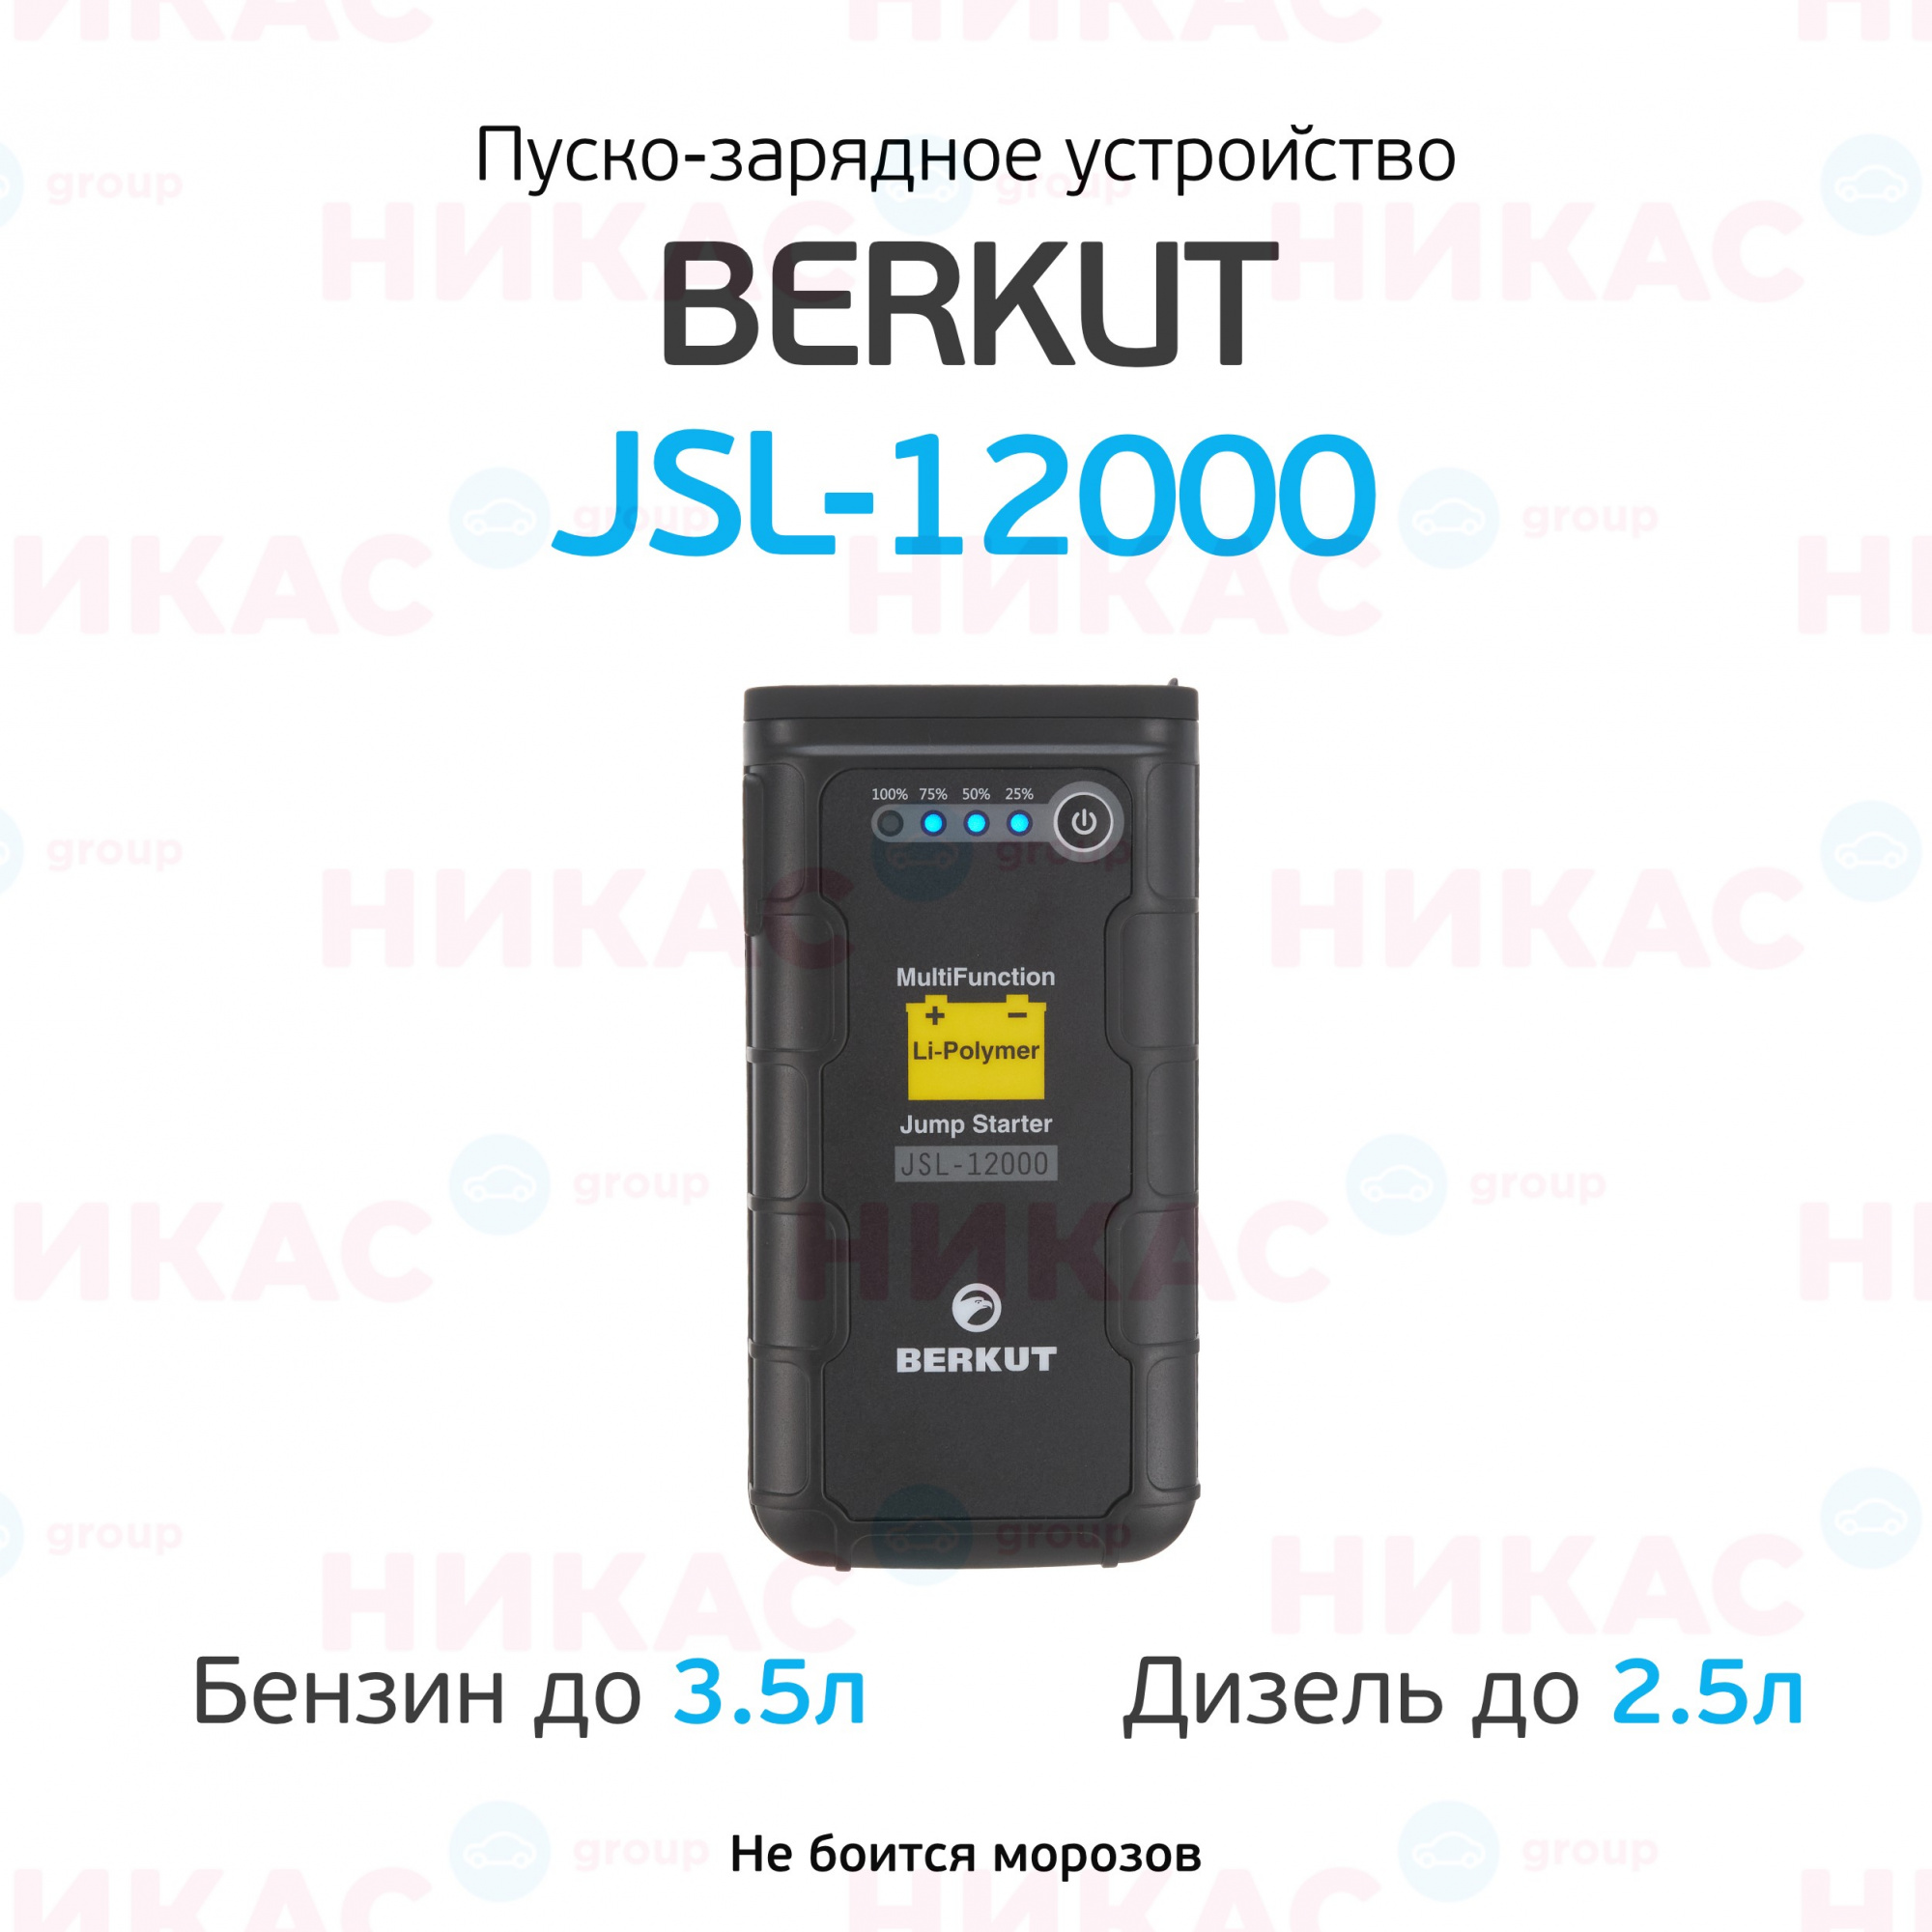 Пуско зарядное устройство jsl. Беркут 12000 пуско зарядное. Пуско-зарядное устройство Berkut JSL-12000. ПЗУ Беркут GSL 12000. Беркут JSL 12000 инструкция.